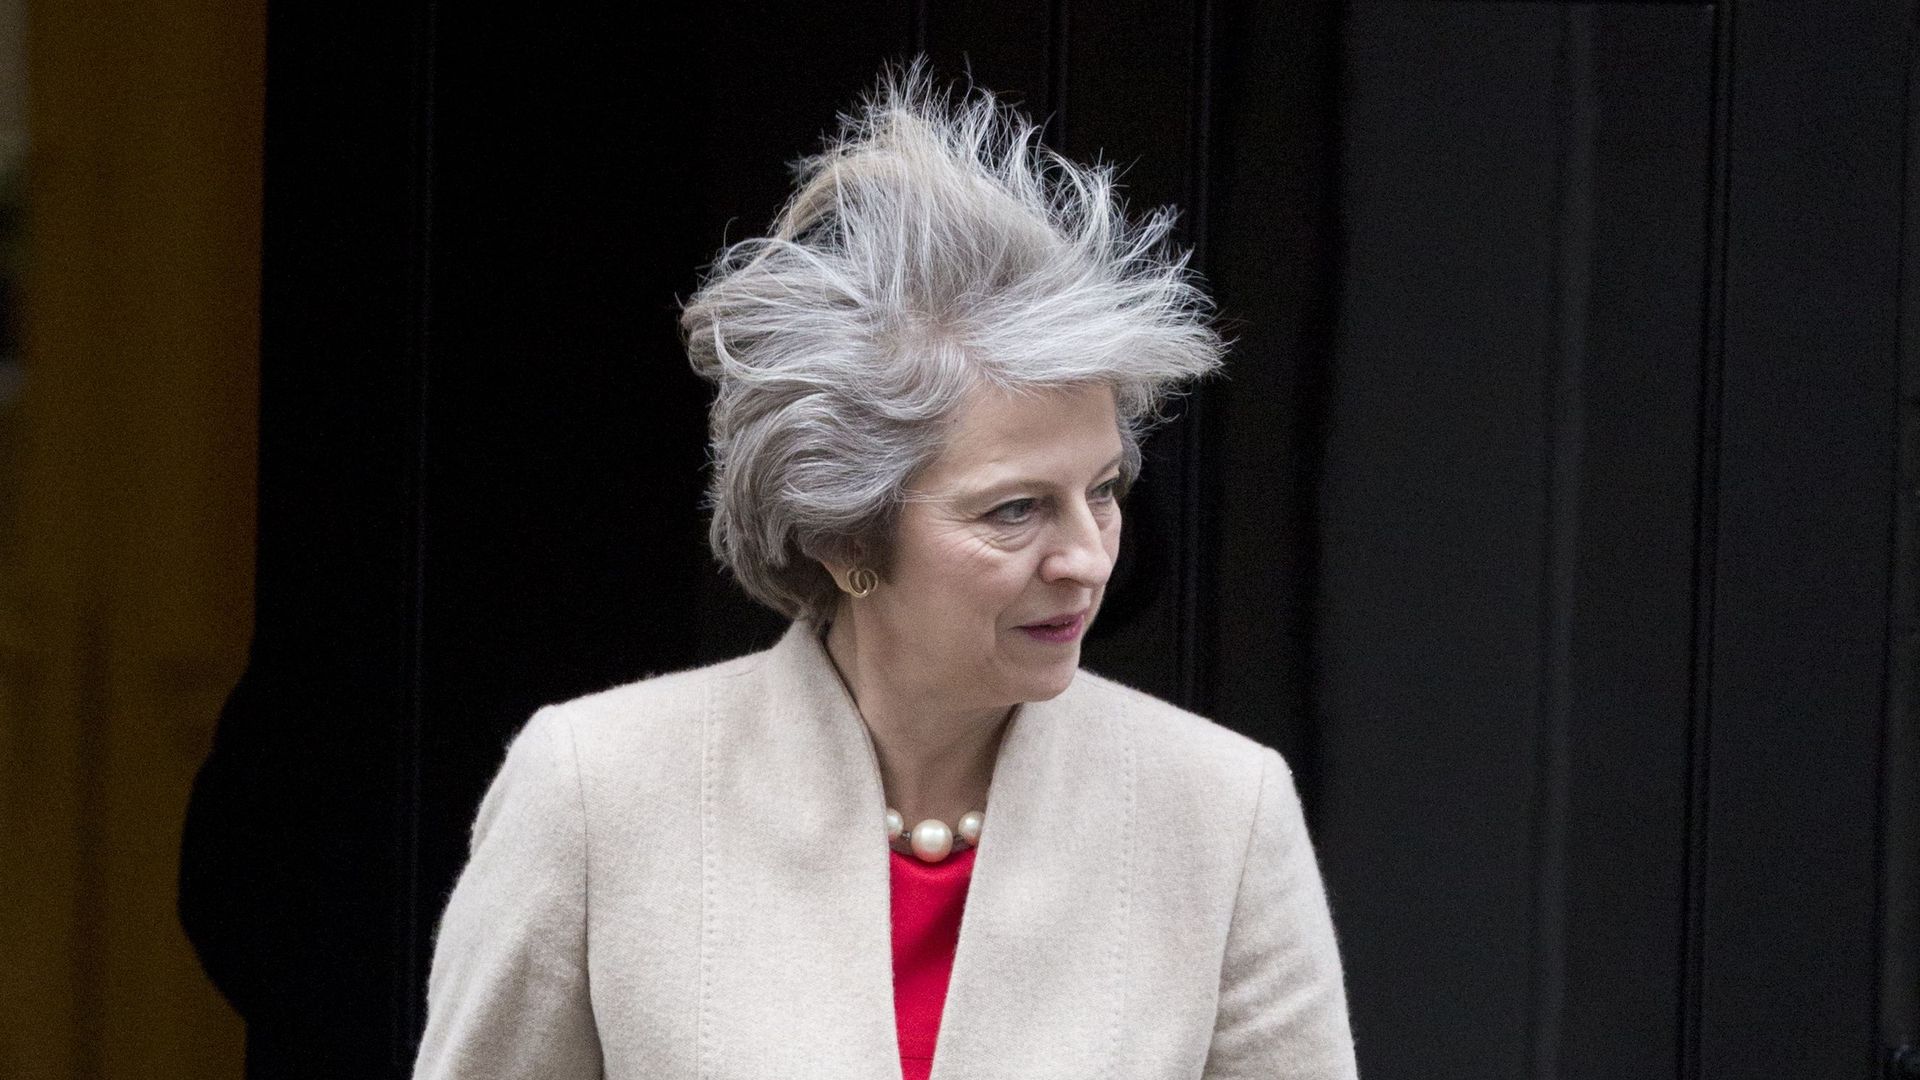 Theresa May, la Première ministre britannique arrivée au pouvoir suite au vote du Brexit